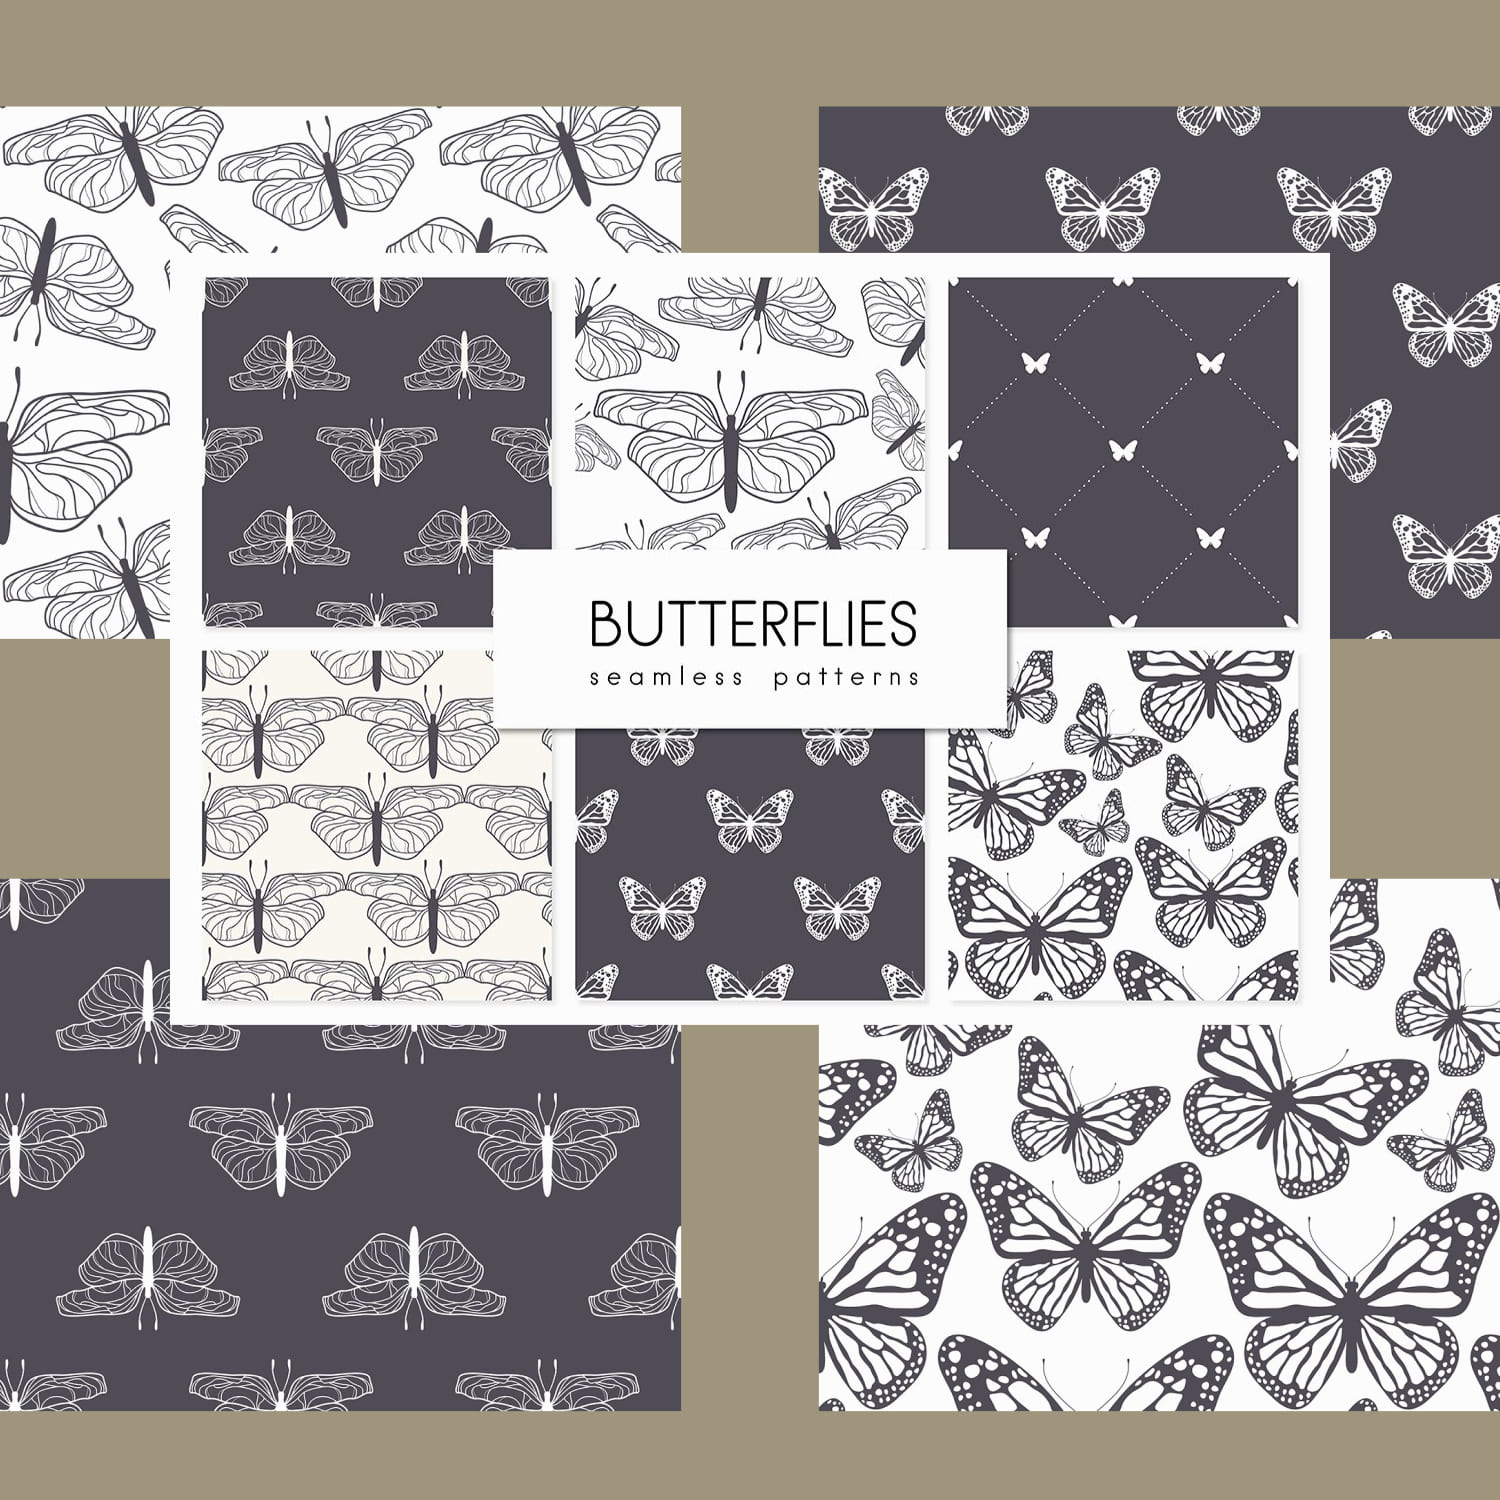 Butterflies. Seamless Patterns Set cover.